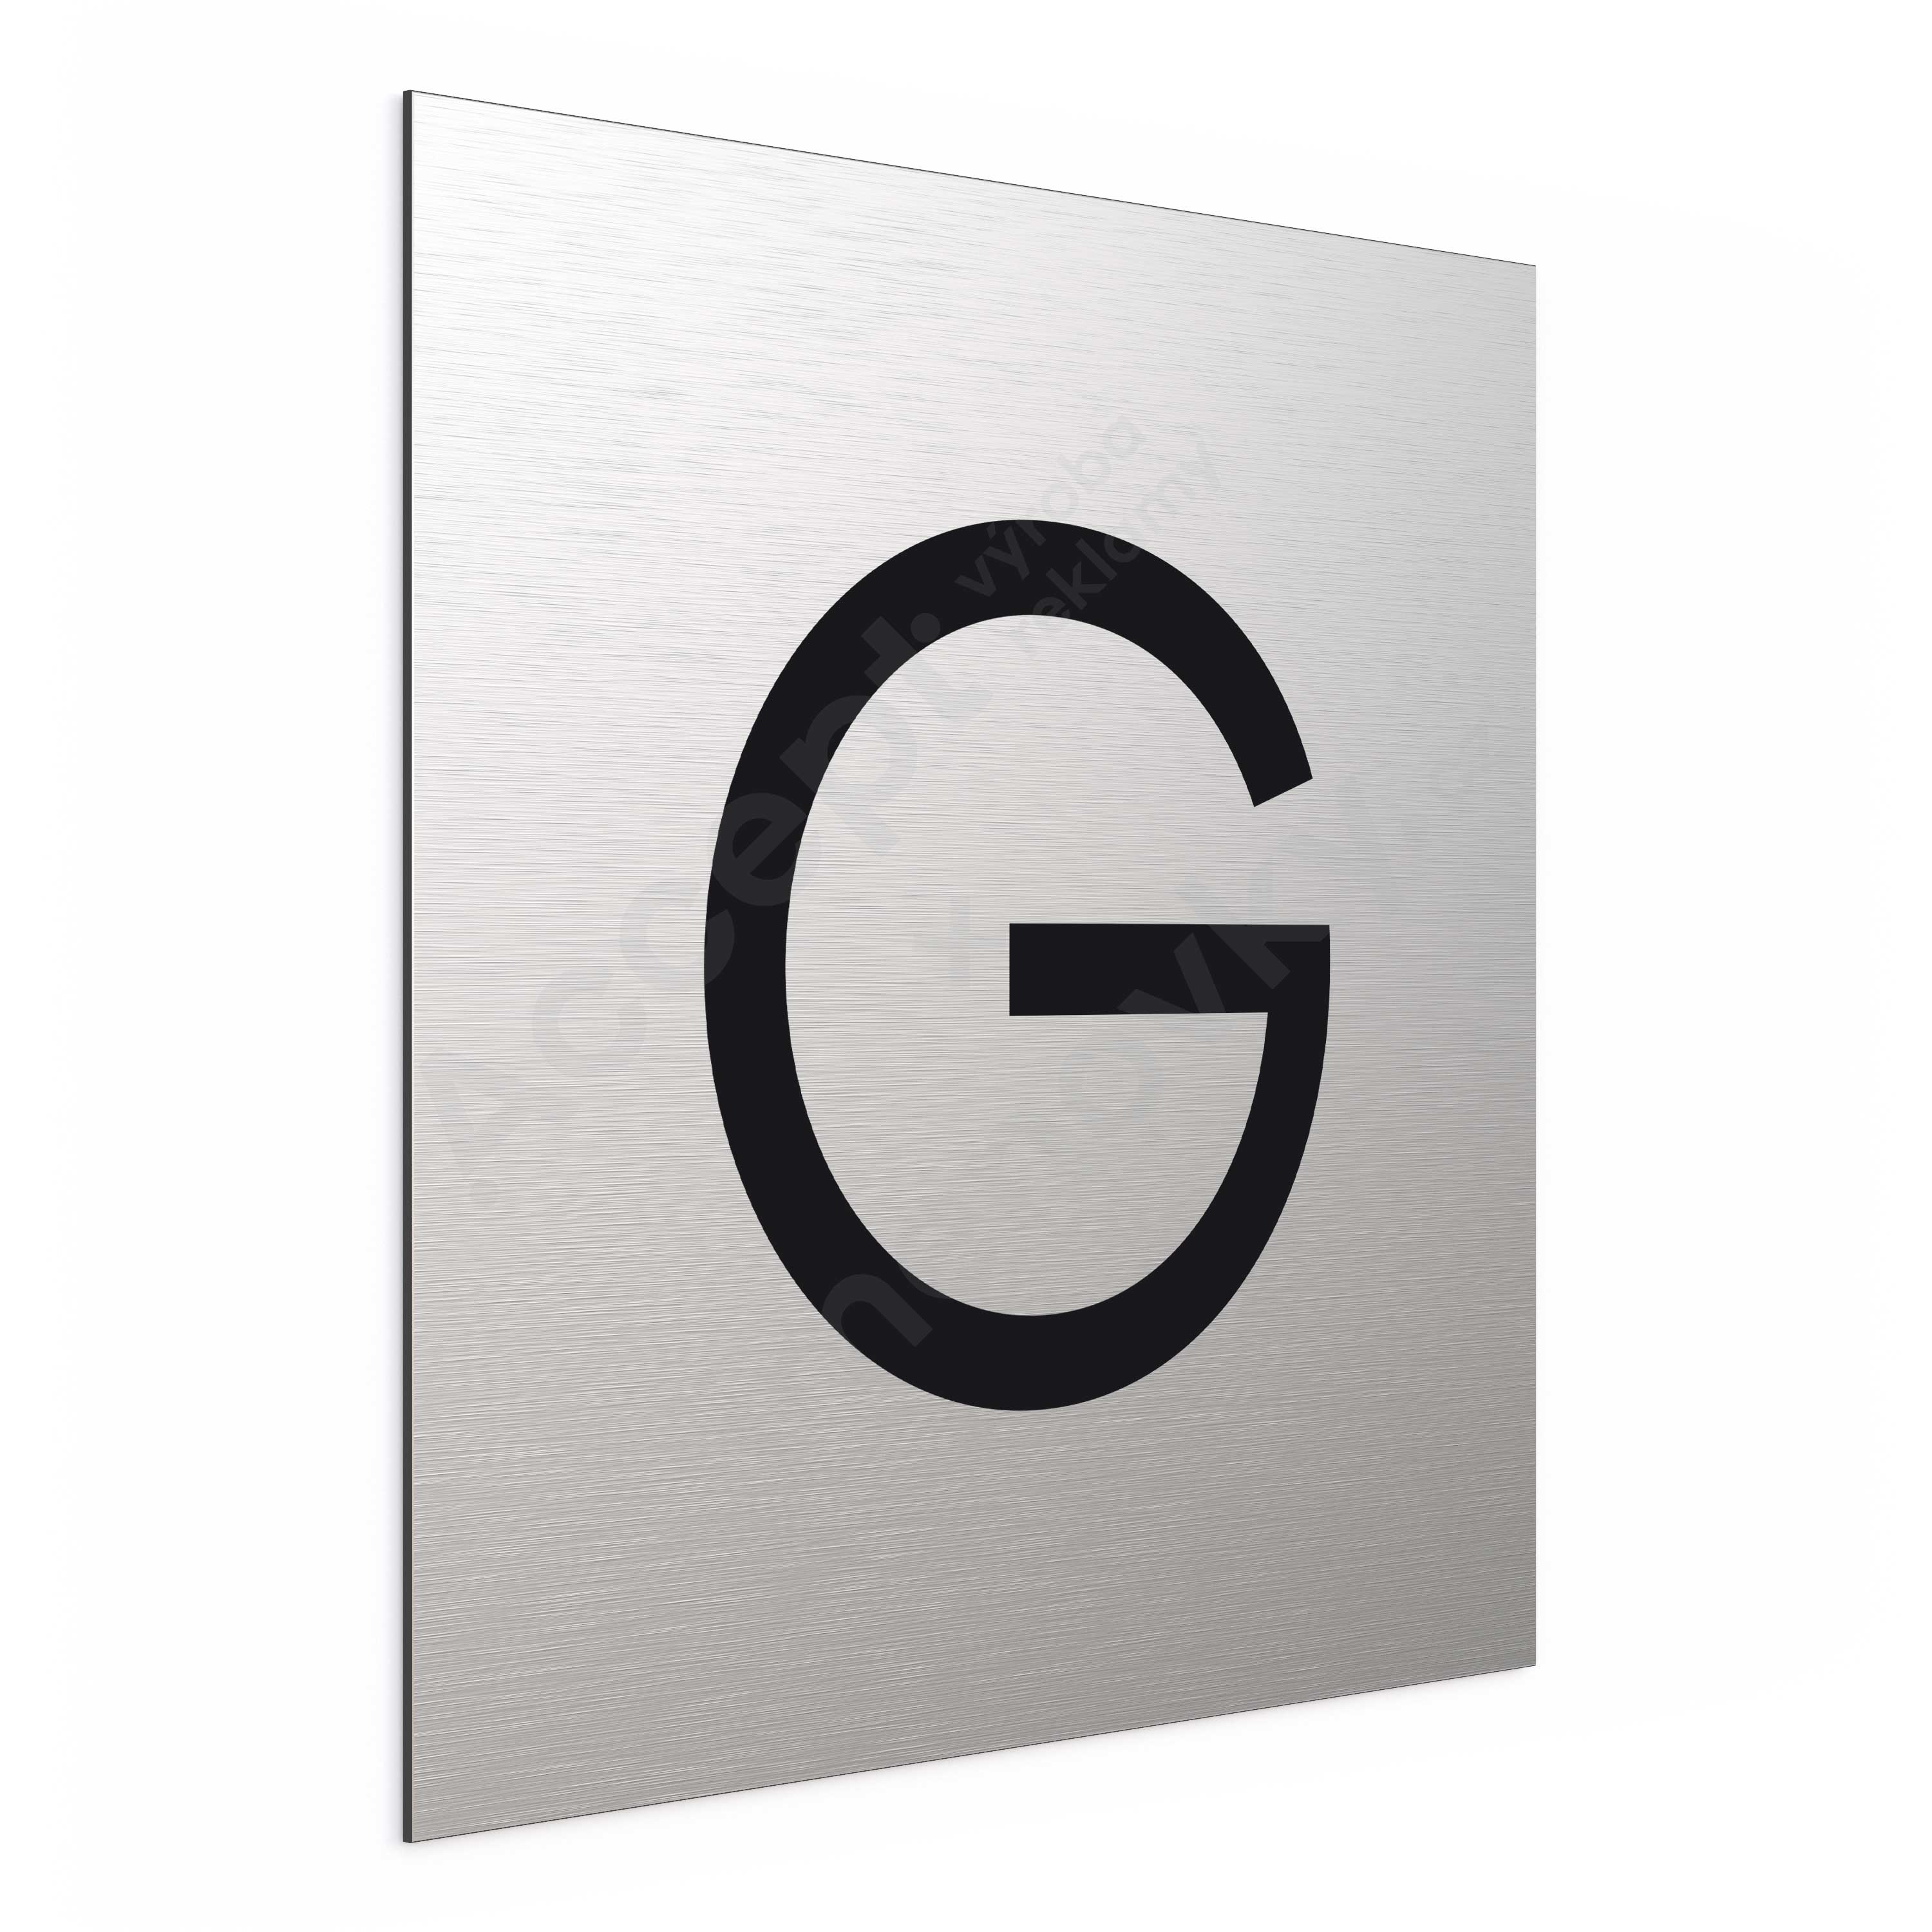 Oznaen podla - psmeno "G" (300 x 300 mm)